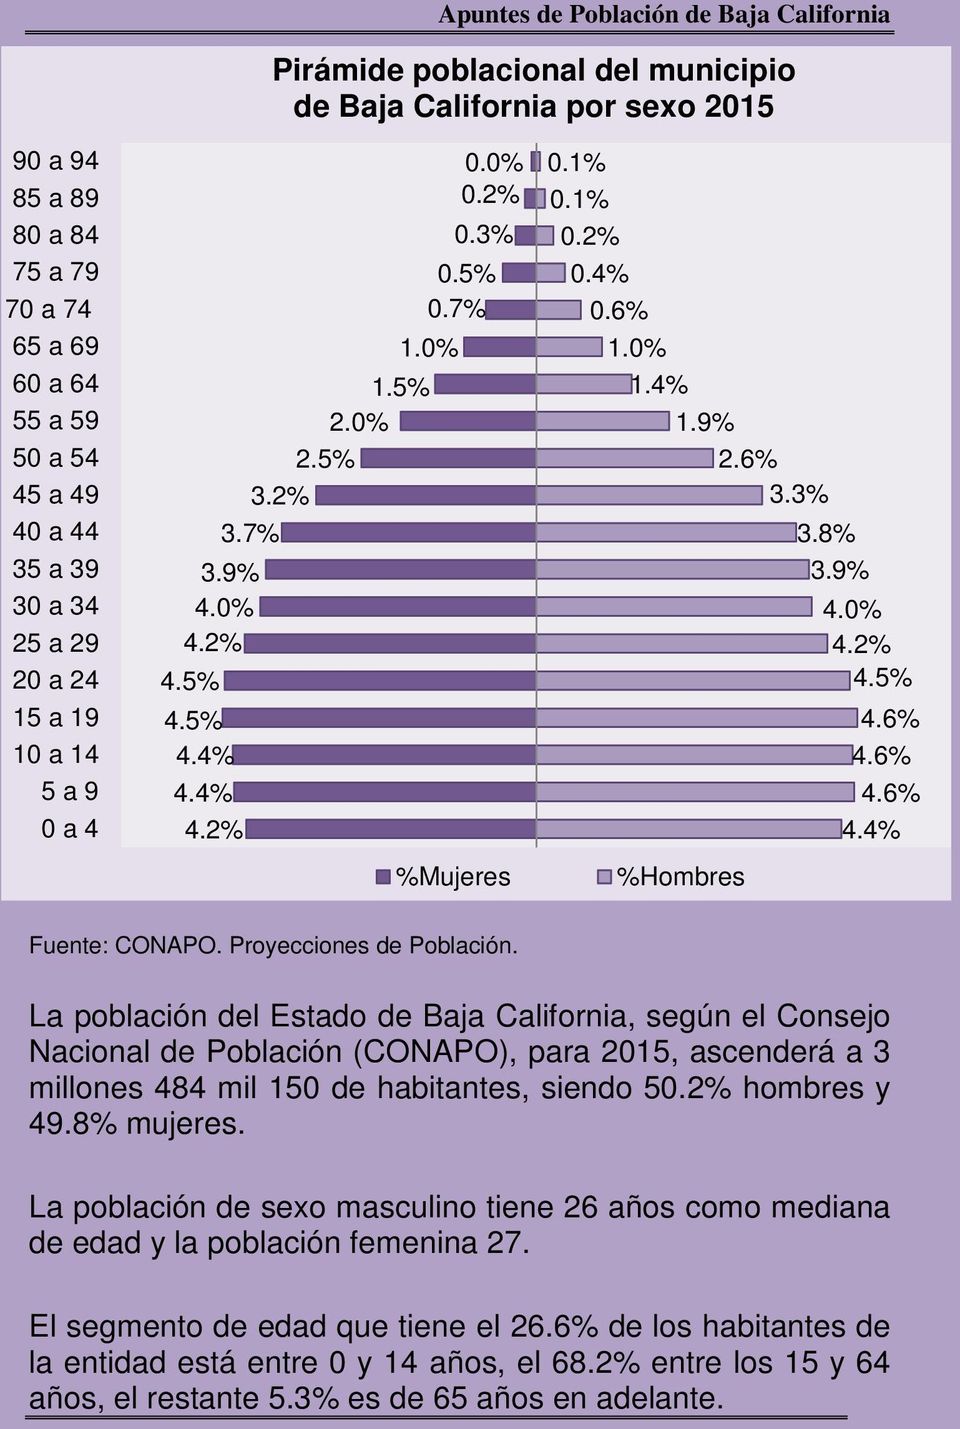 0% La población del Estado de Baja California, según el Consejo Nacional de Población (CONAPO), para 2015, ascenderá a 3 millones 484 mil 150 de habitantes, siendo 5 hombres y 49.8% mujeres.